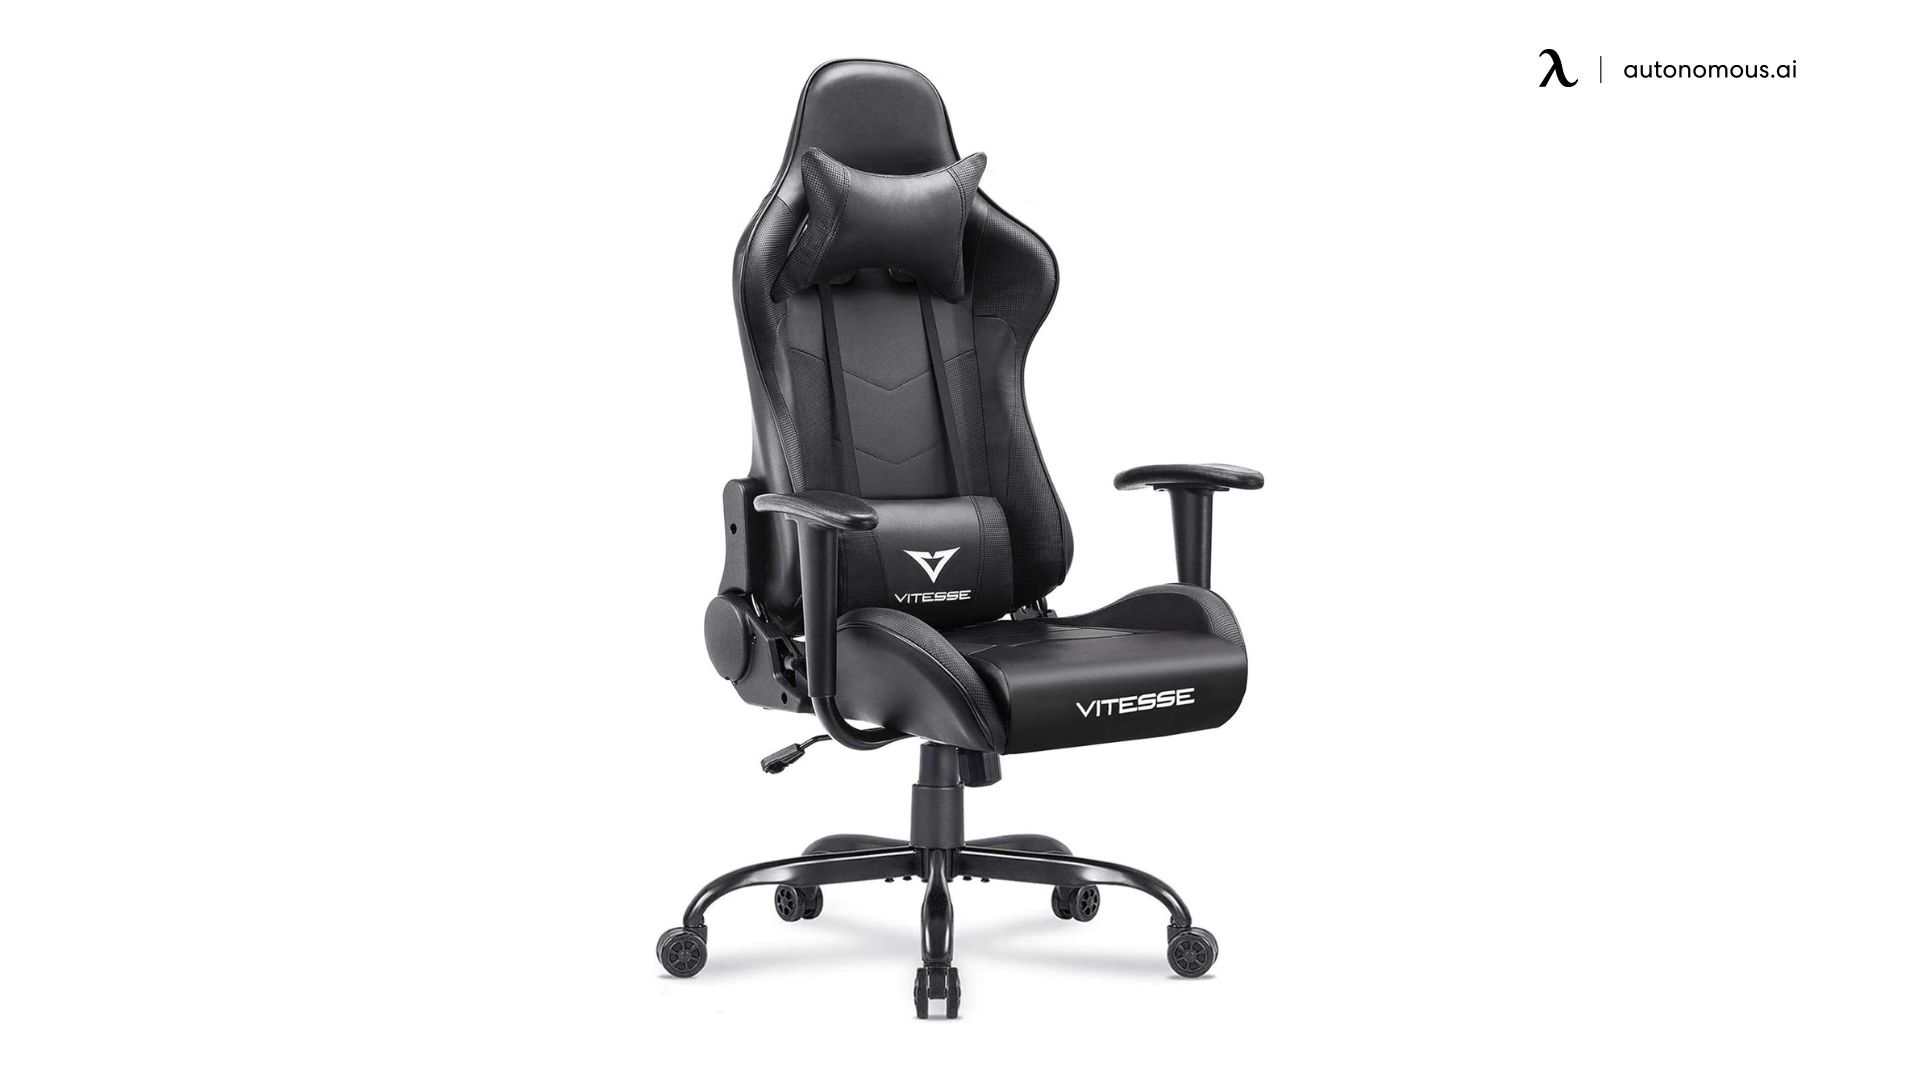 VITESSE Ergonomic Gaming Chair